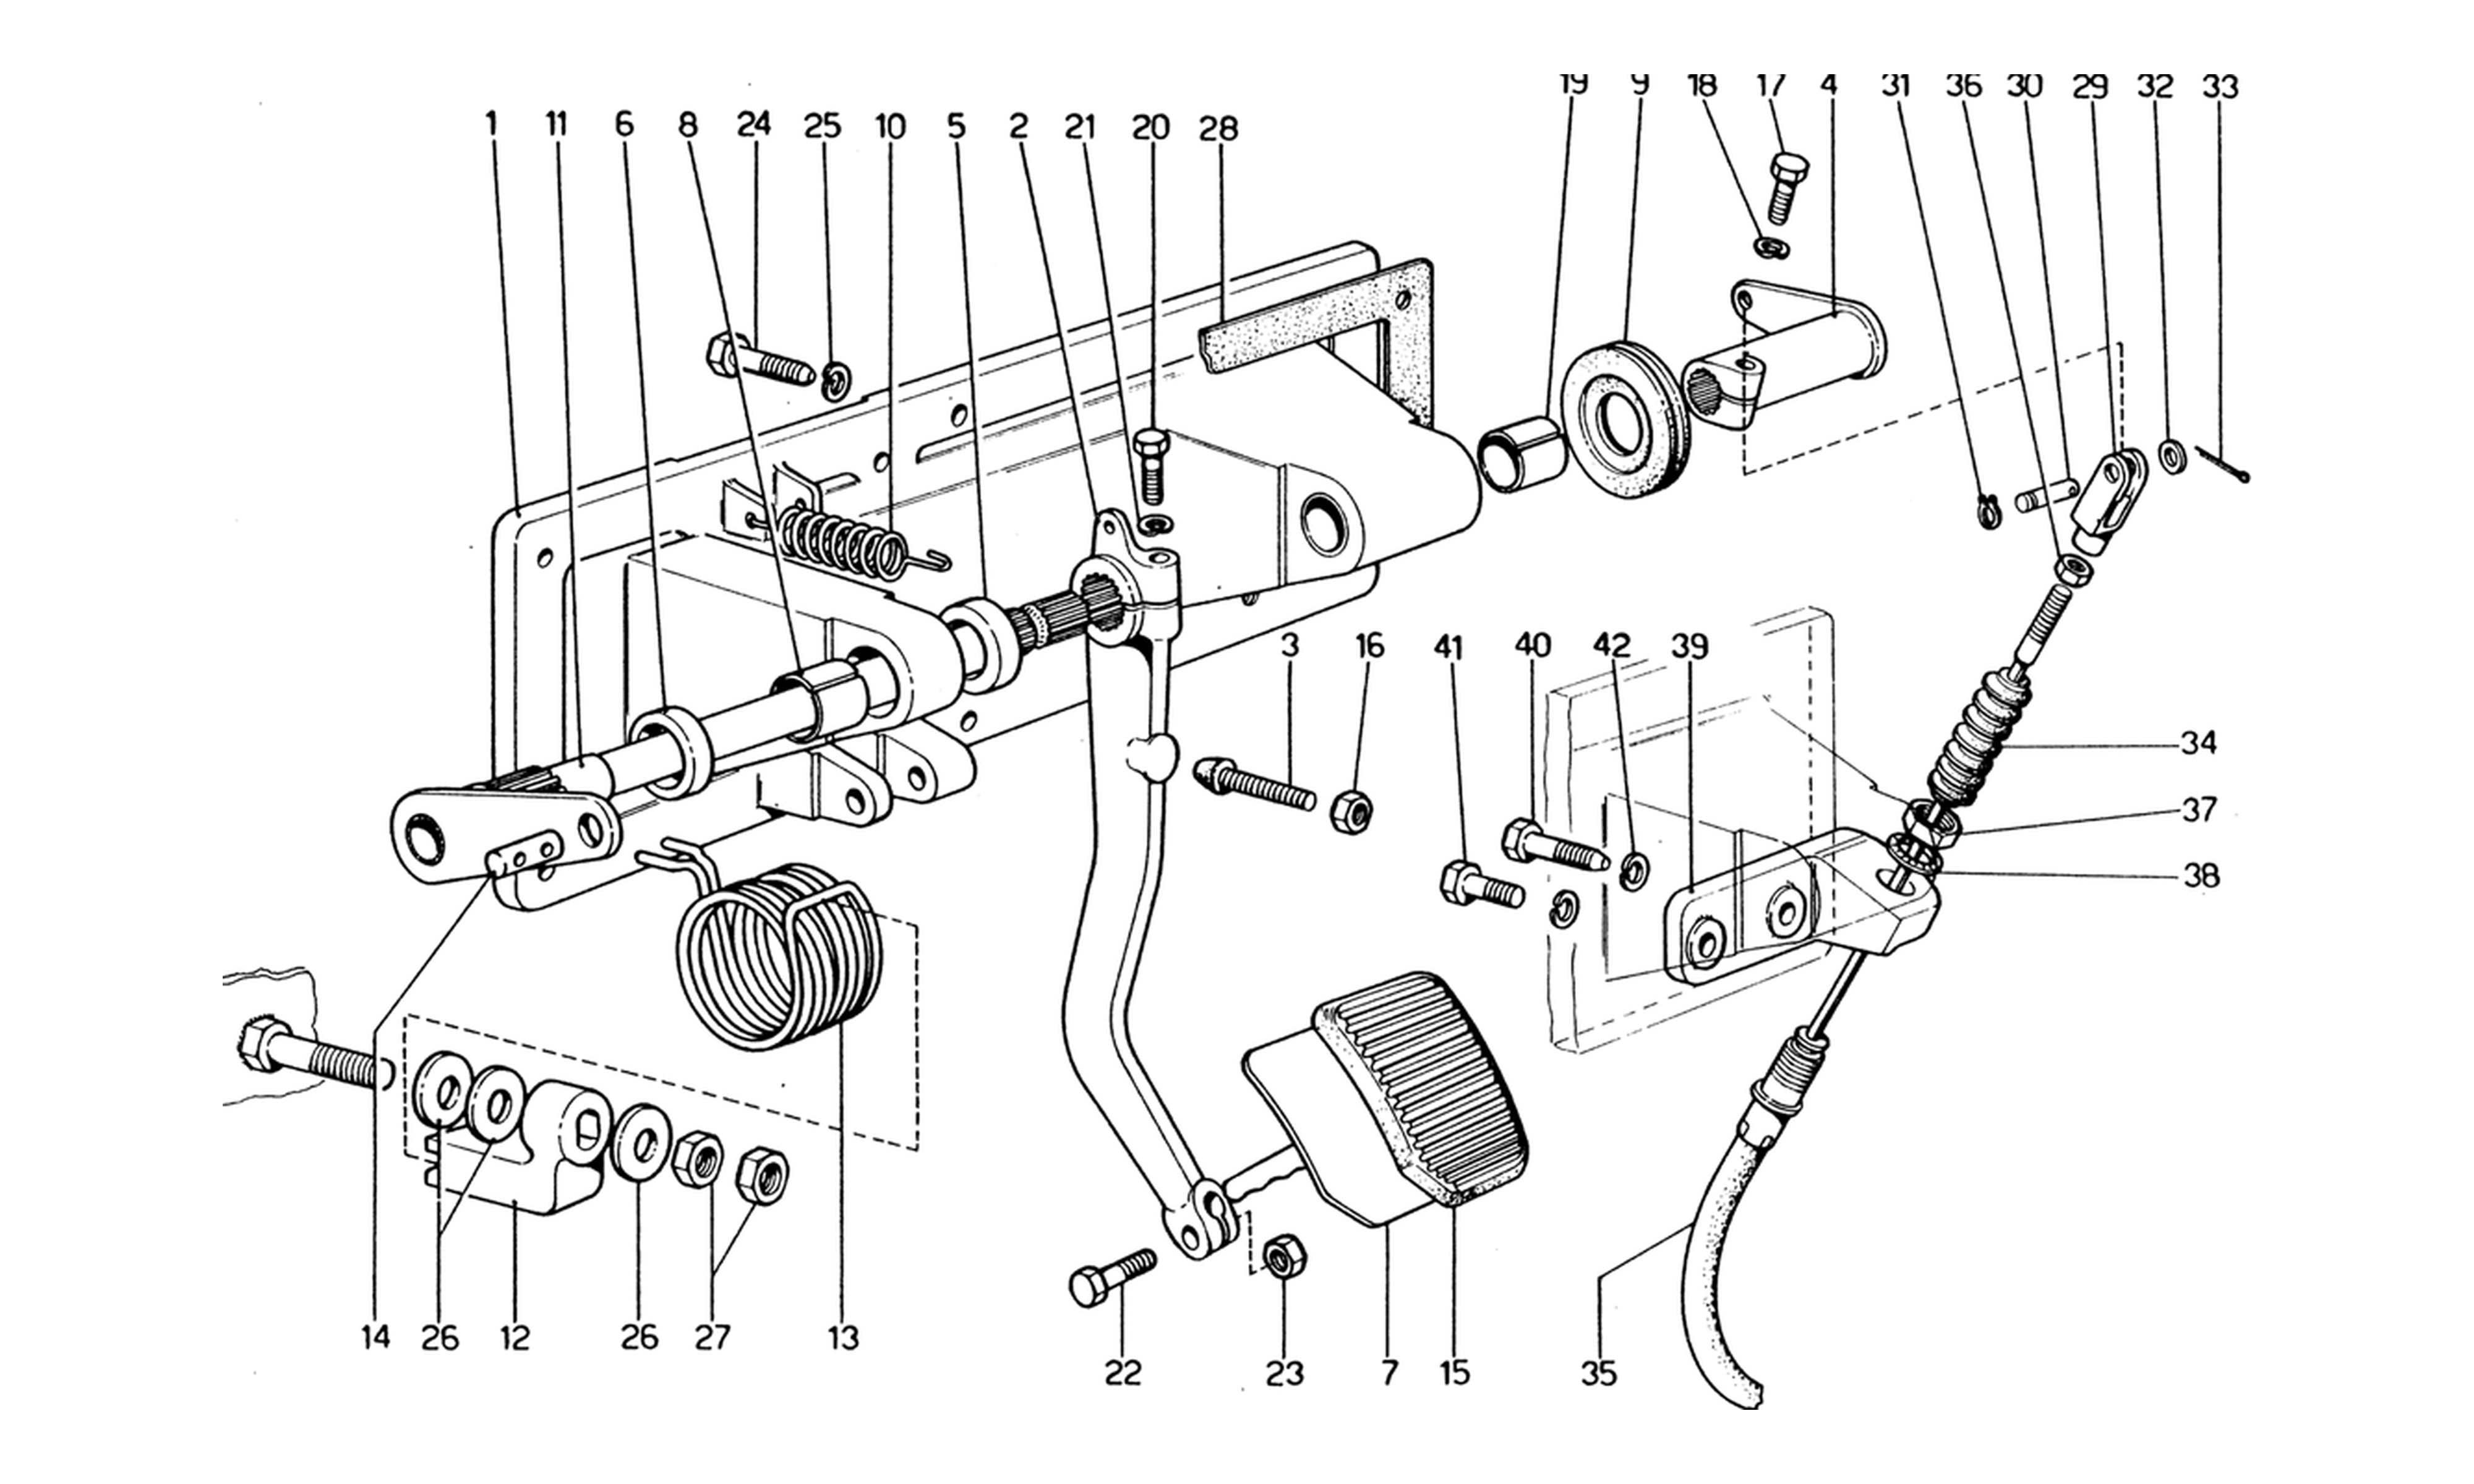 Schematic: Pedal Board - Clutch Control